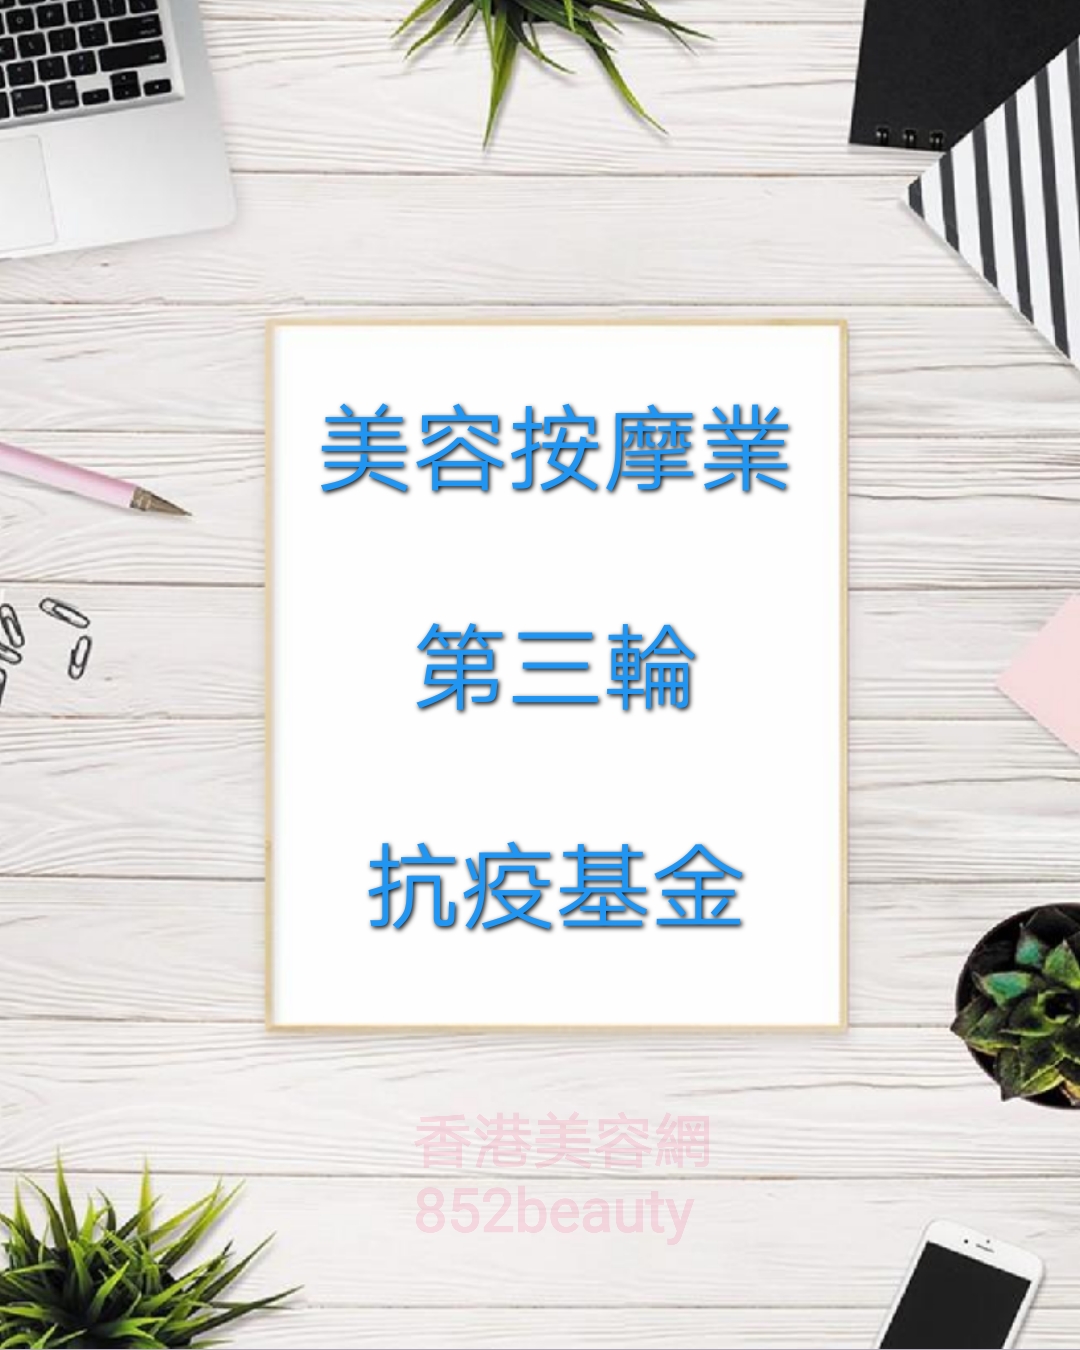 香港美容網 Hong Kong Beauty Salon  今期焦點, 熱話, 資訊: 第三輪防疫抗疫基金「美容院、按摩院及派對房間資助計劃」